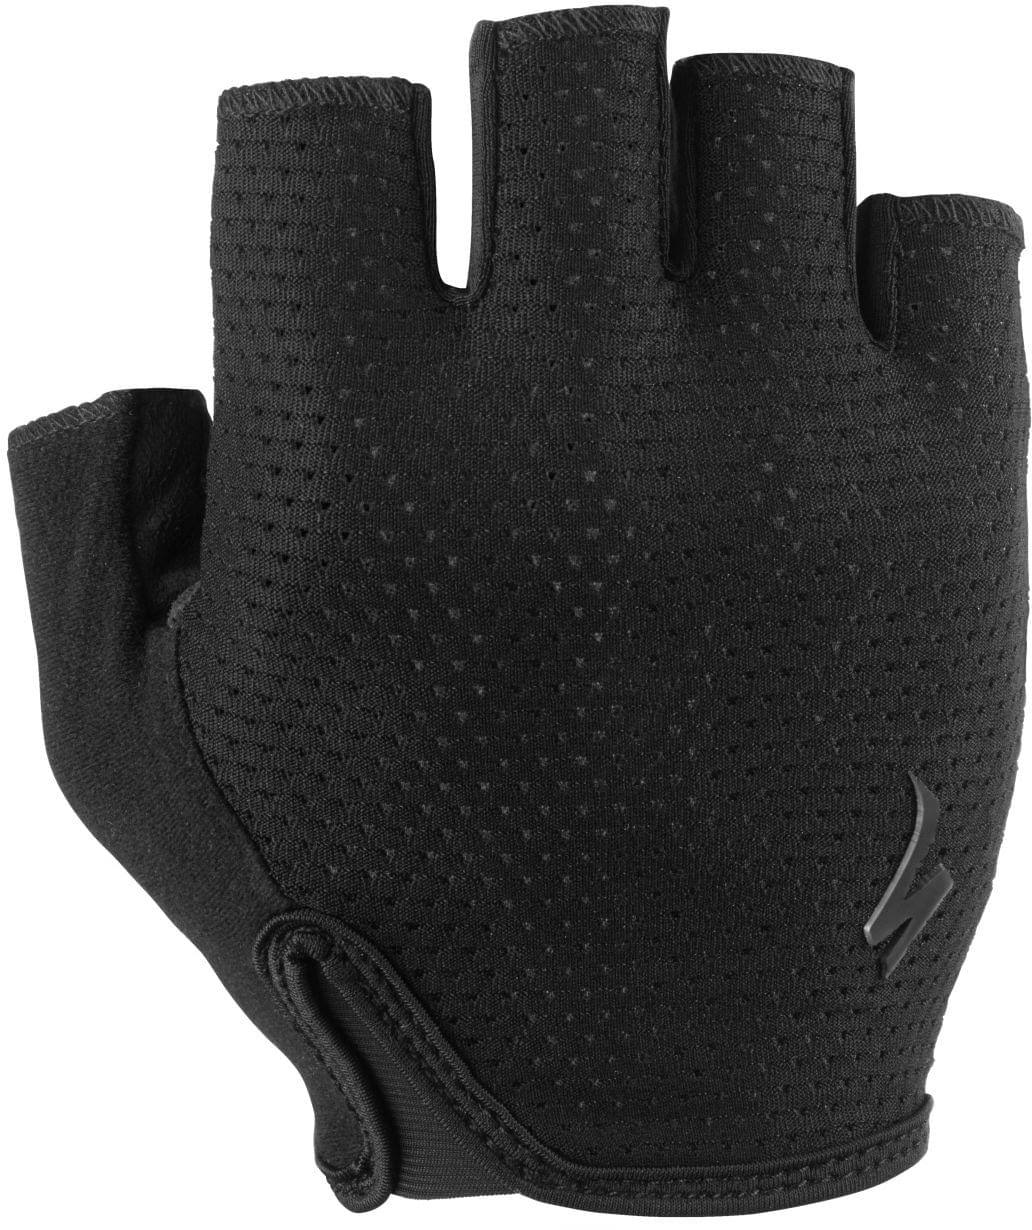 Specialized Body Geometry Grail Gloves - Women's L Black